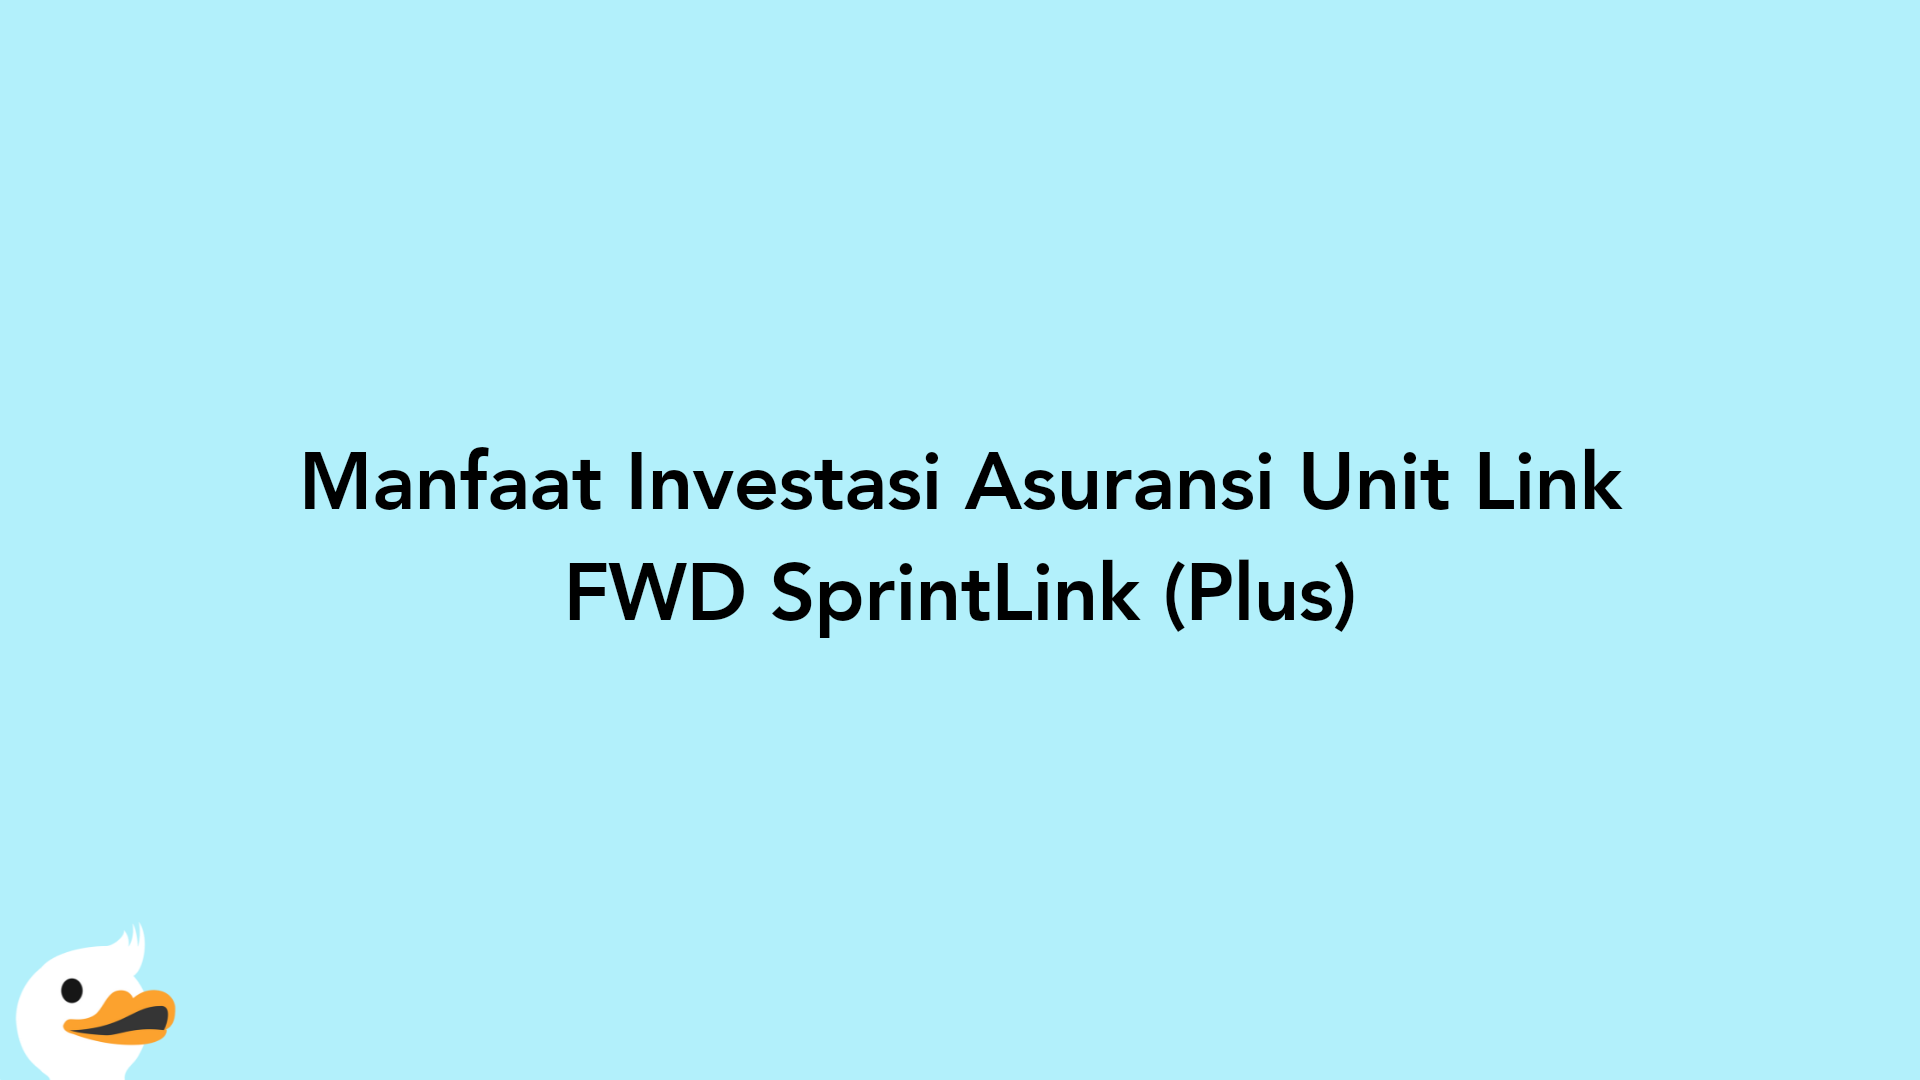 Manfaat Investasi Asuransi Unit Link FWD SprintLink (Plus)